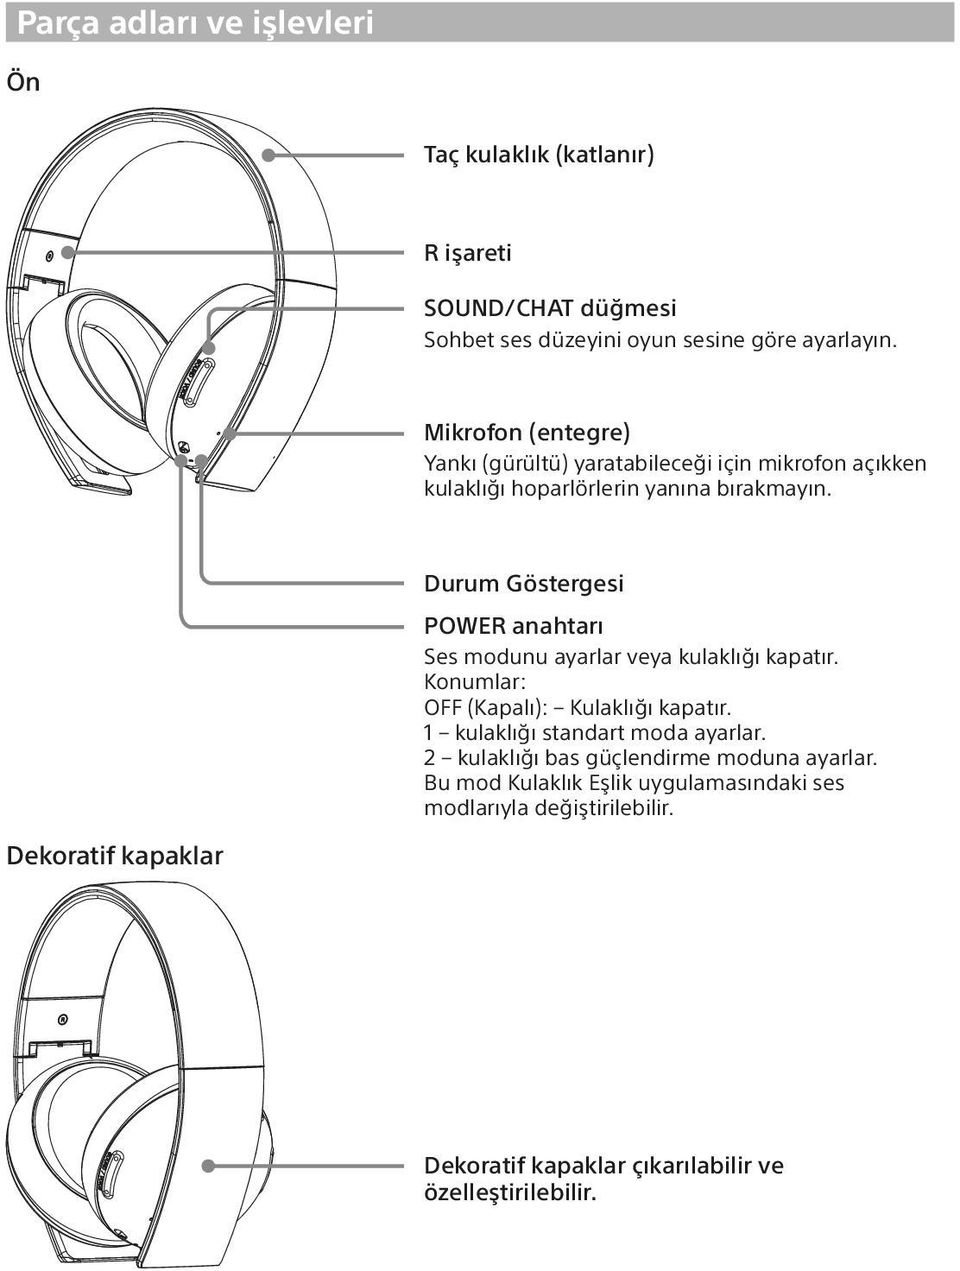 Dekoratif kapaklar Durum Göstergesi POWER anahtarı Ses modunu ayarlar veya kulaklığı kapatır. Konumlar: OFF (Kapalı): Kulaklığı kapatır.